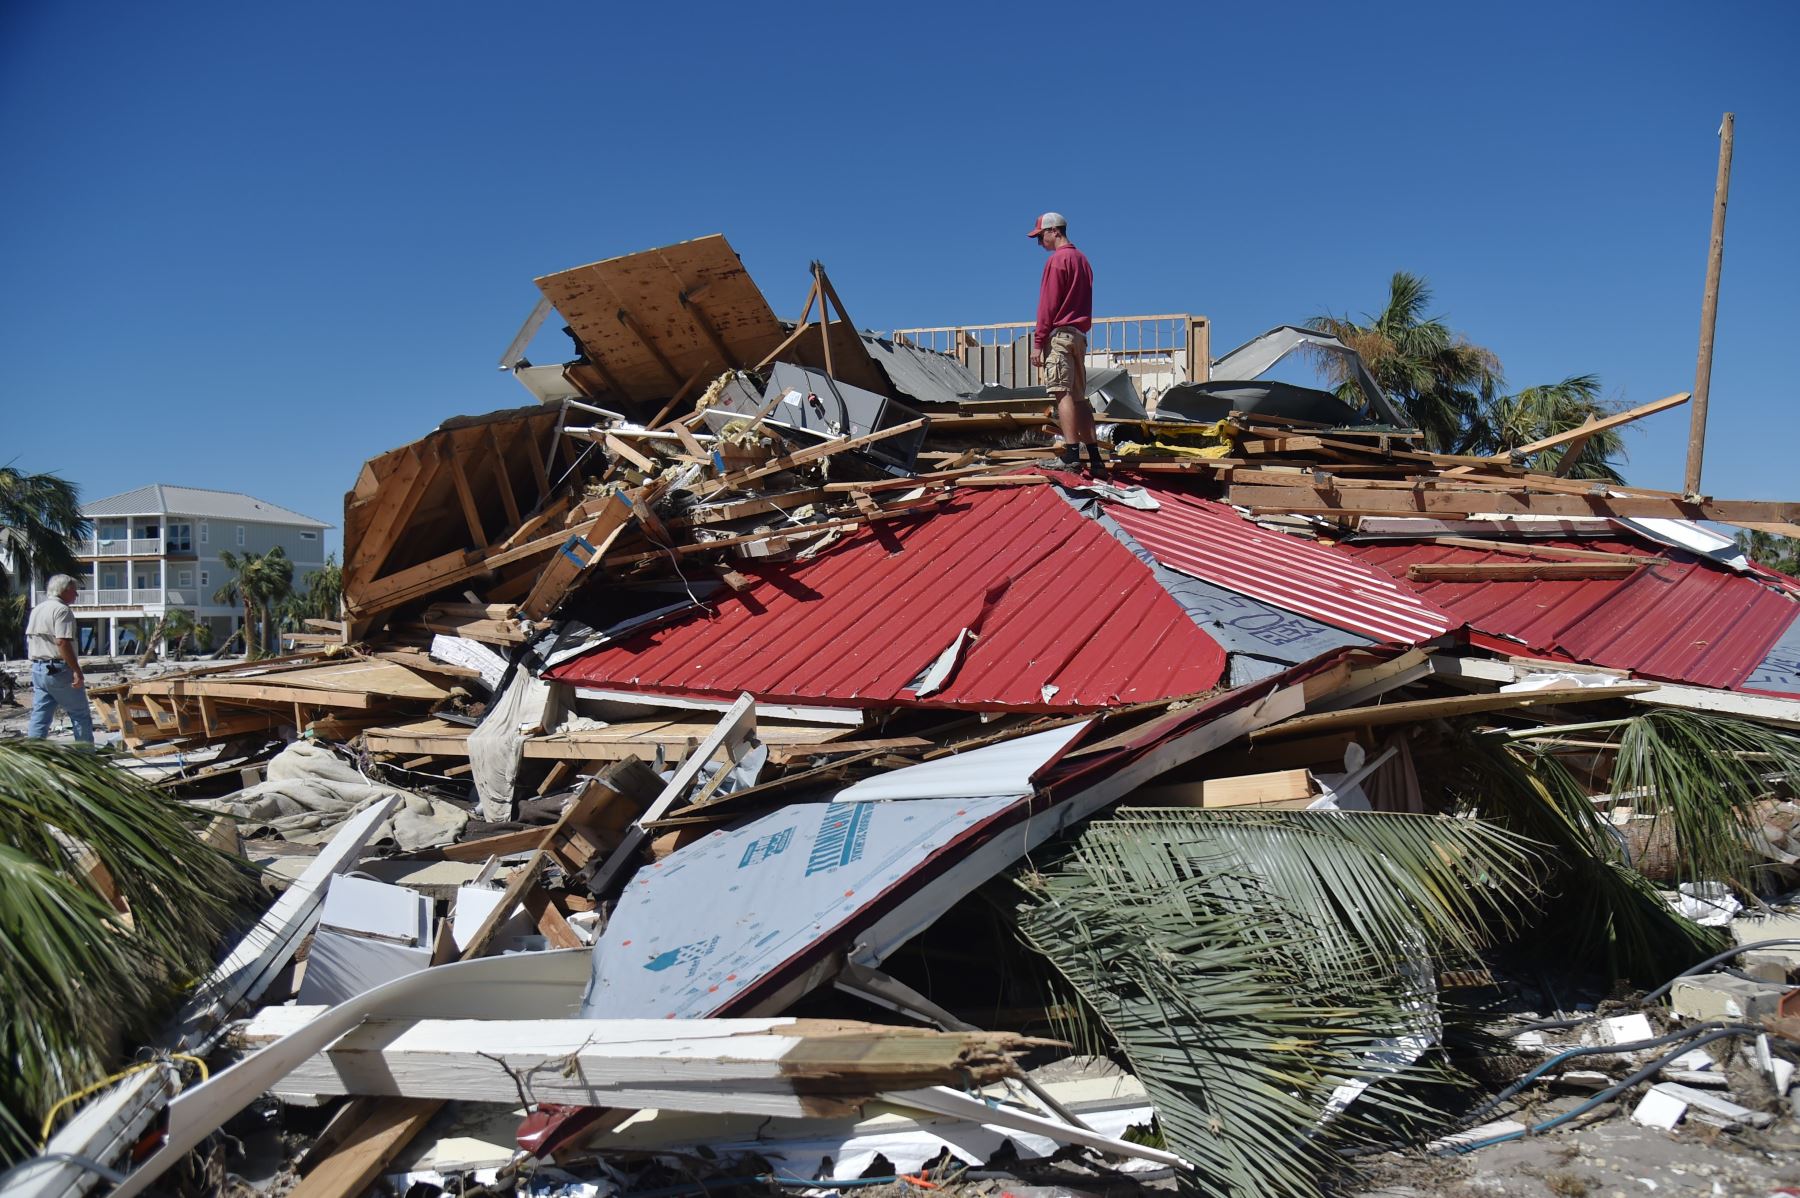 Pete Miller (L) verifica los restos de su casa después del huracán Michael el 12 de octubre de 2018 en Mexico Beach, Florida. - Los equipos de rescate que utilizaron perros rastreadores llevaron a cabo una severa búsqueda de víctimas del huracán Michael el viernes, en medio de temores de que el número de muertos por la tormenta de monstruos, que actualmente es de 11, podría aumentar. AFP